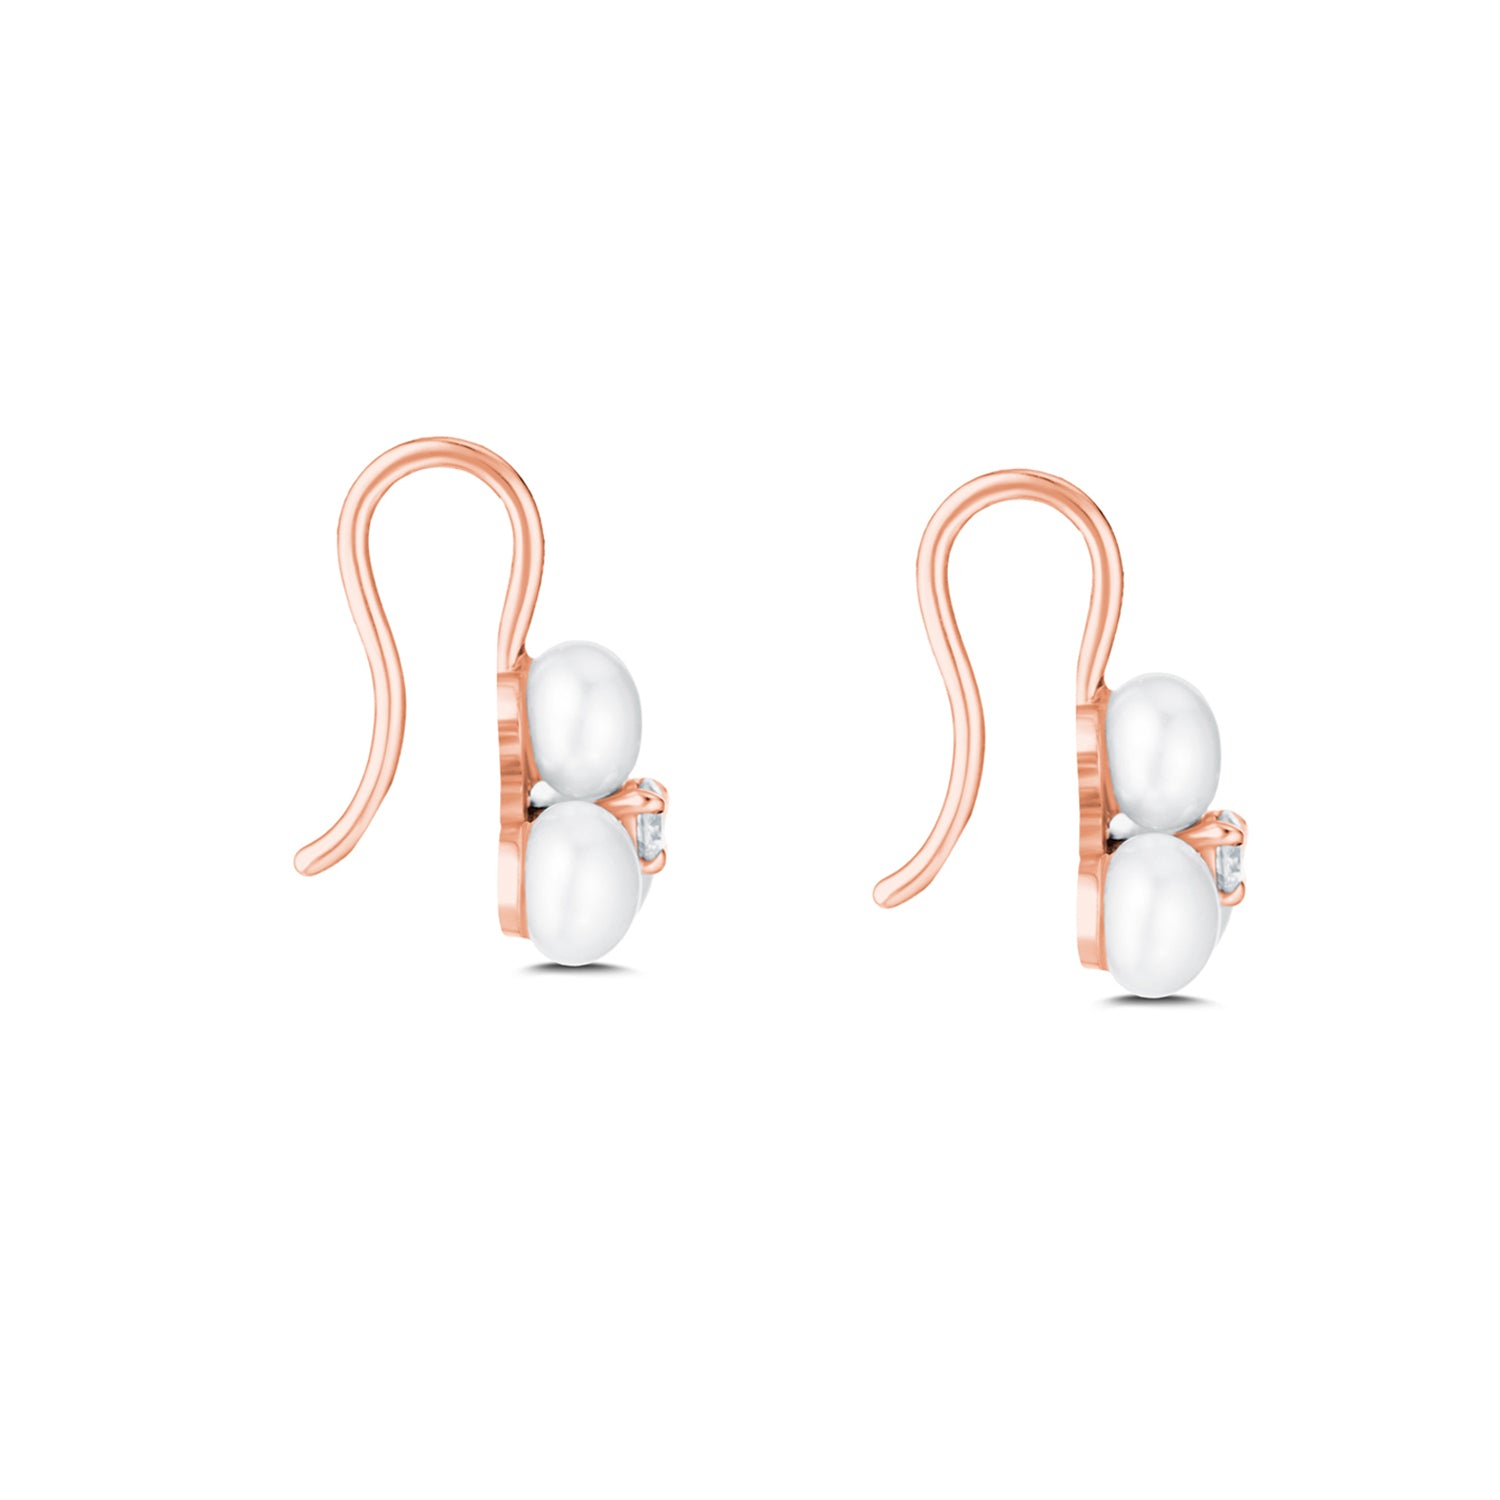 Tri Pearl Earrings